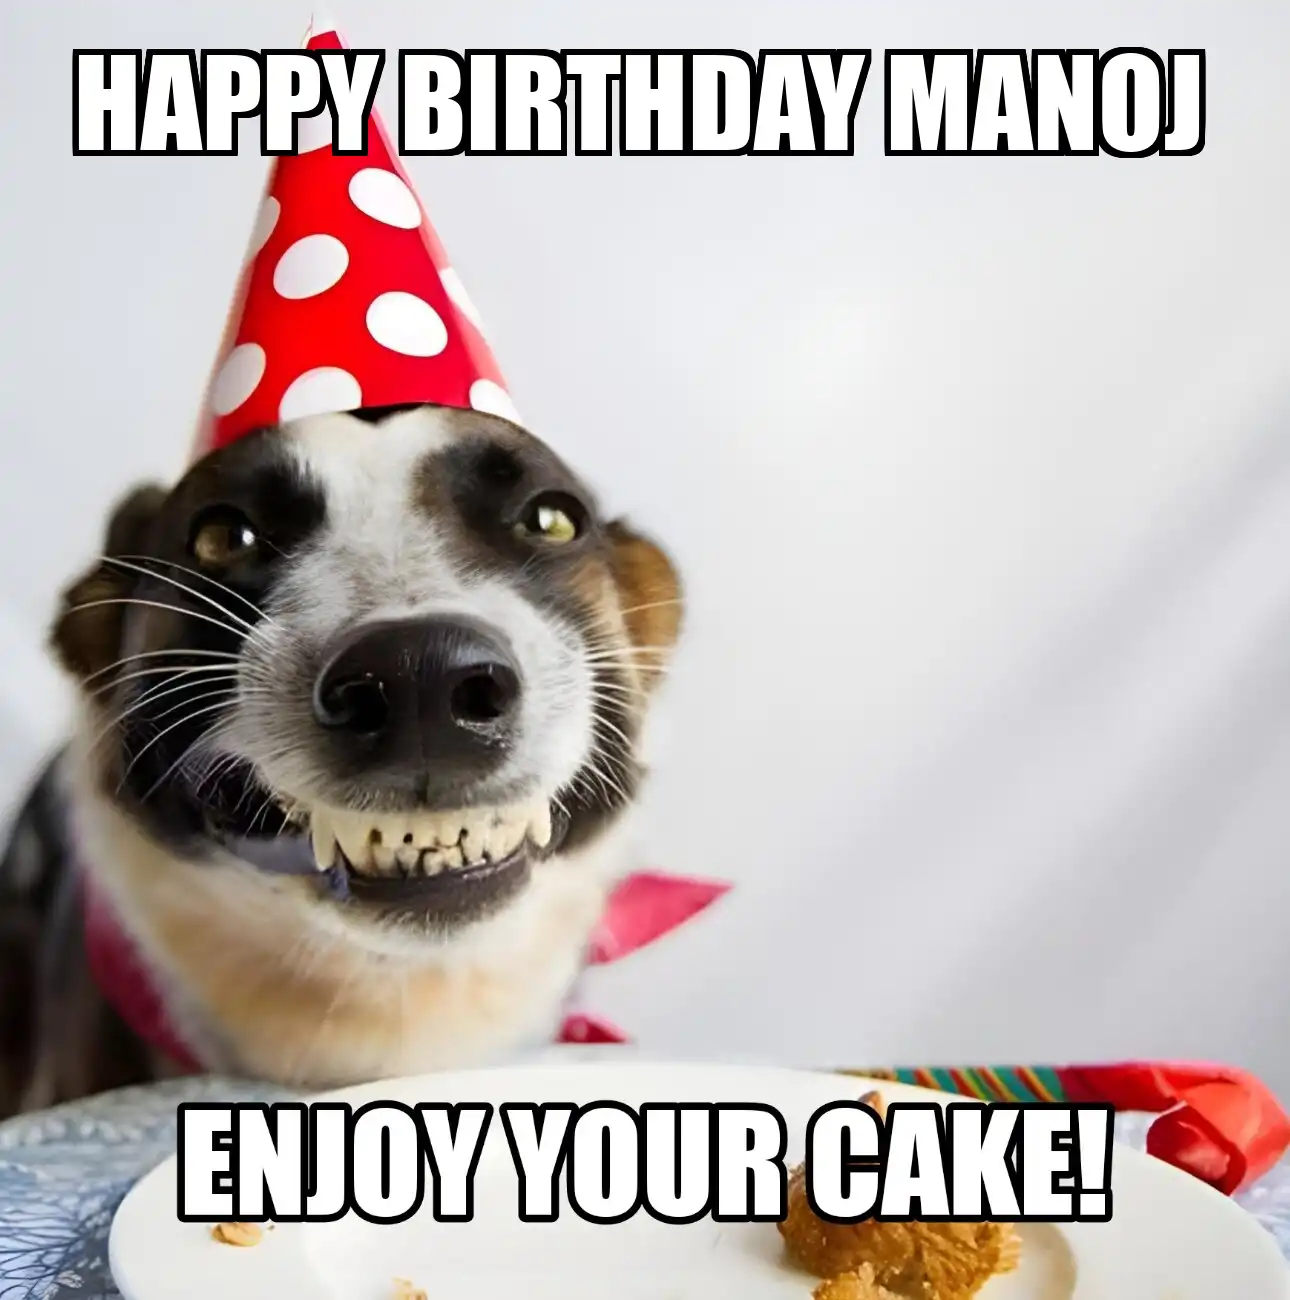 Happy Birthday Manoj Enjoy Your Cake Dog Meme